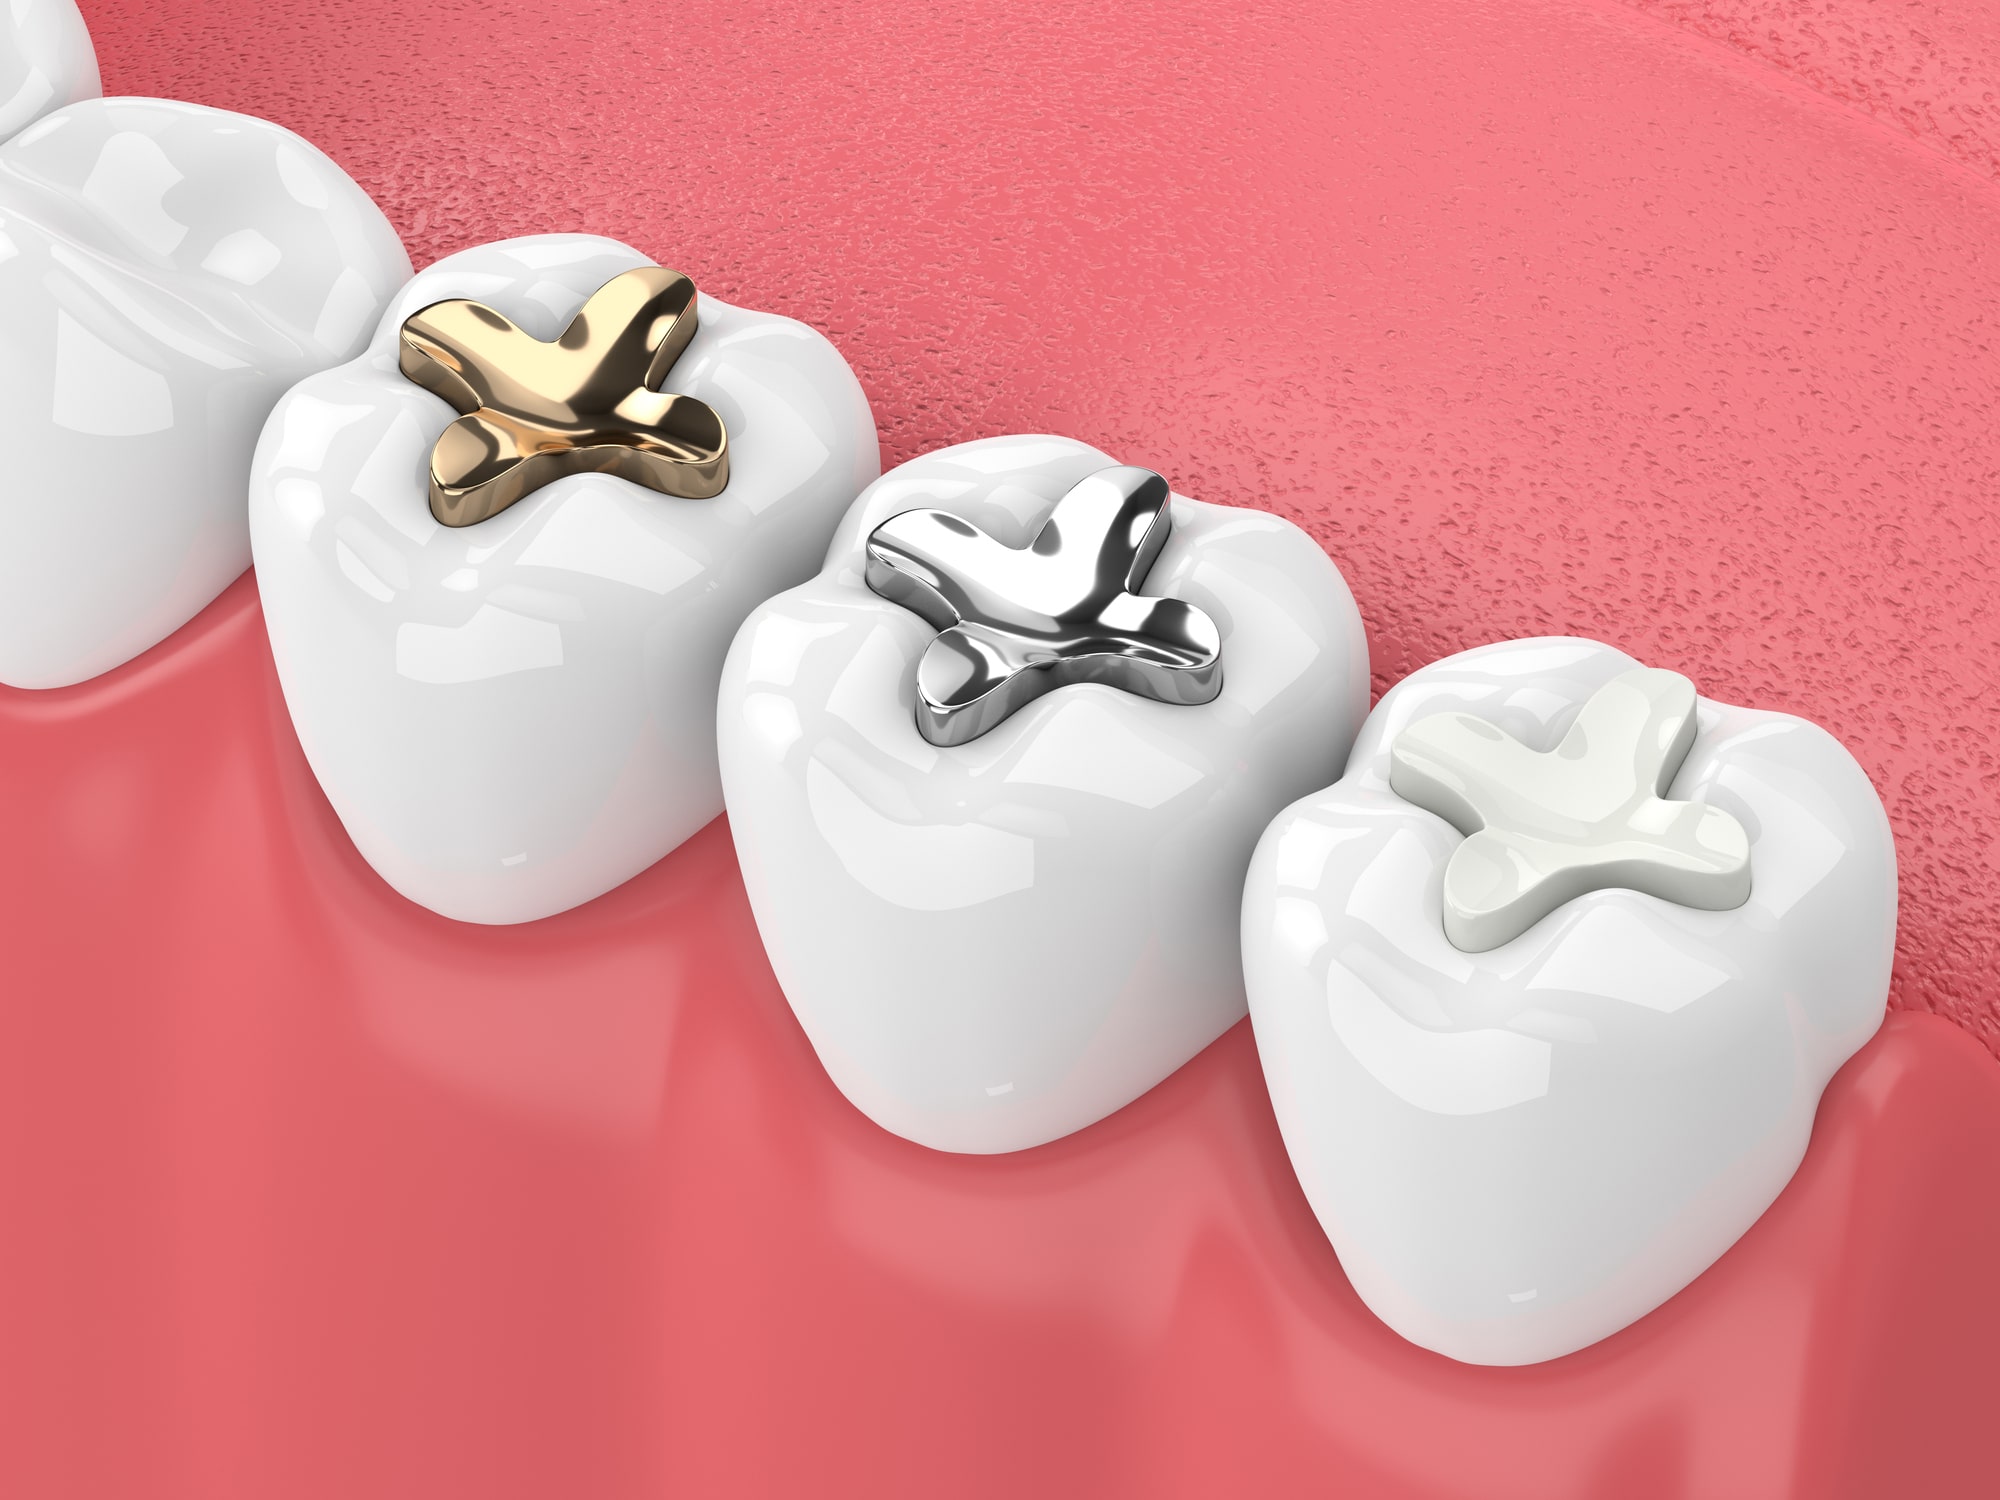 Restorative Dentistry Filling Types